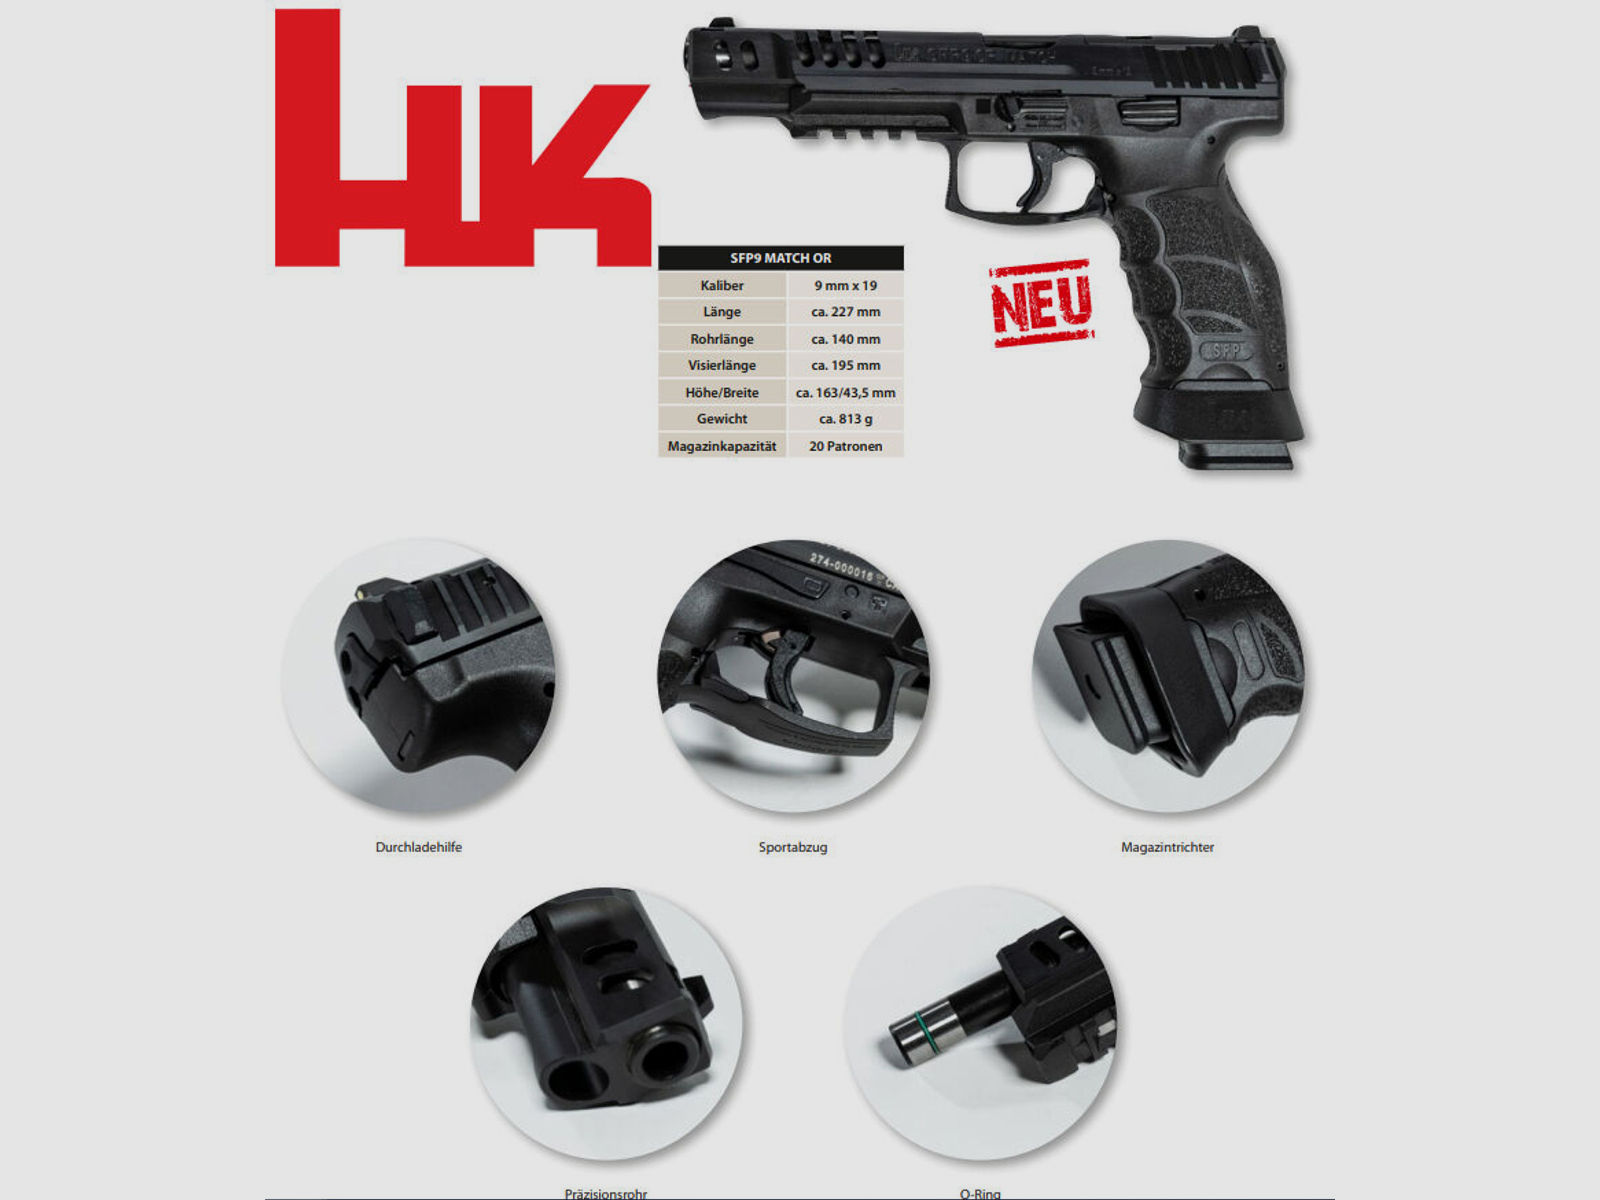 HK SFP9 Match OR - Heckler & Koch SFP9 Match OR - 9mm Luger	 HK SFP9 Match OR - Heckler & Koch SFP9 Match OR - 9mm Luger SFP 9